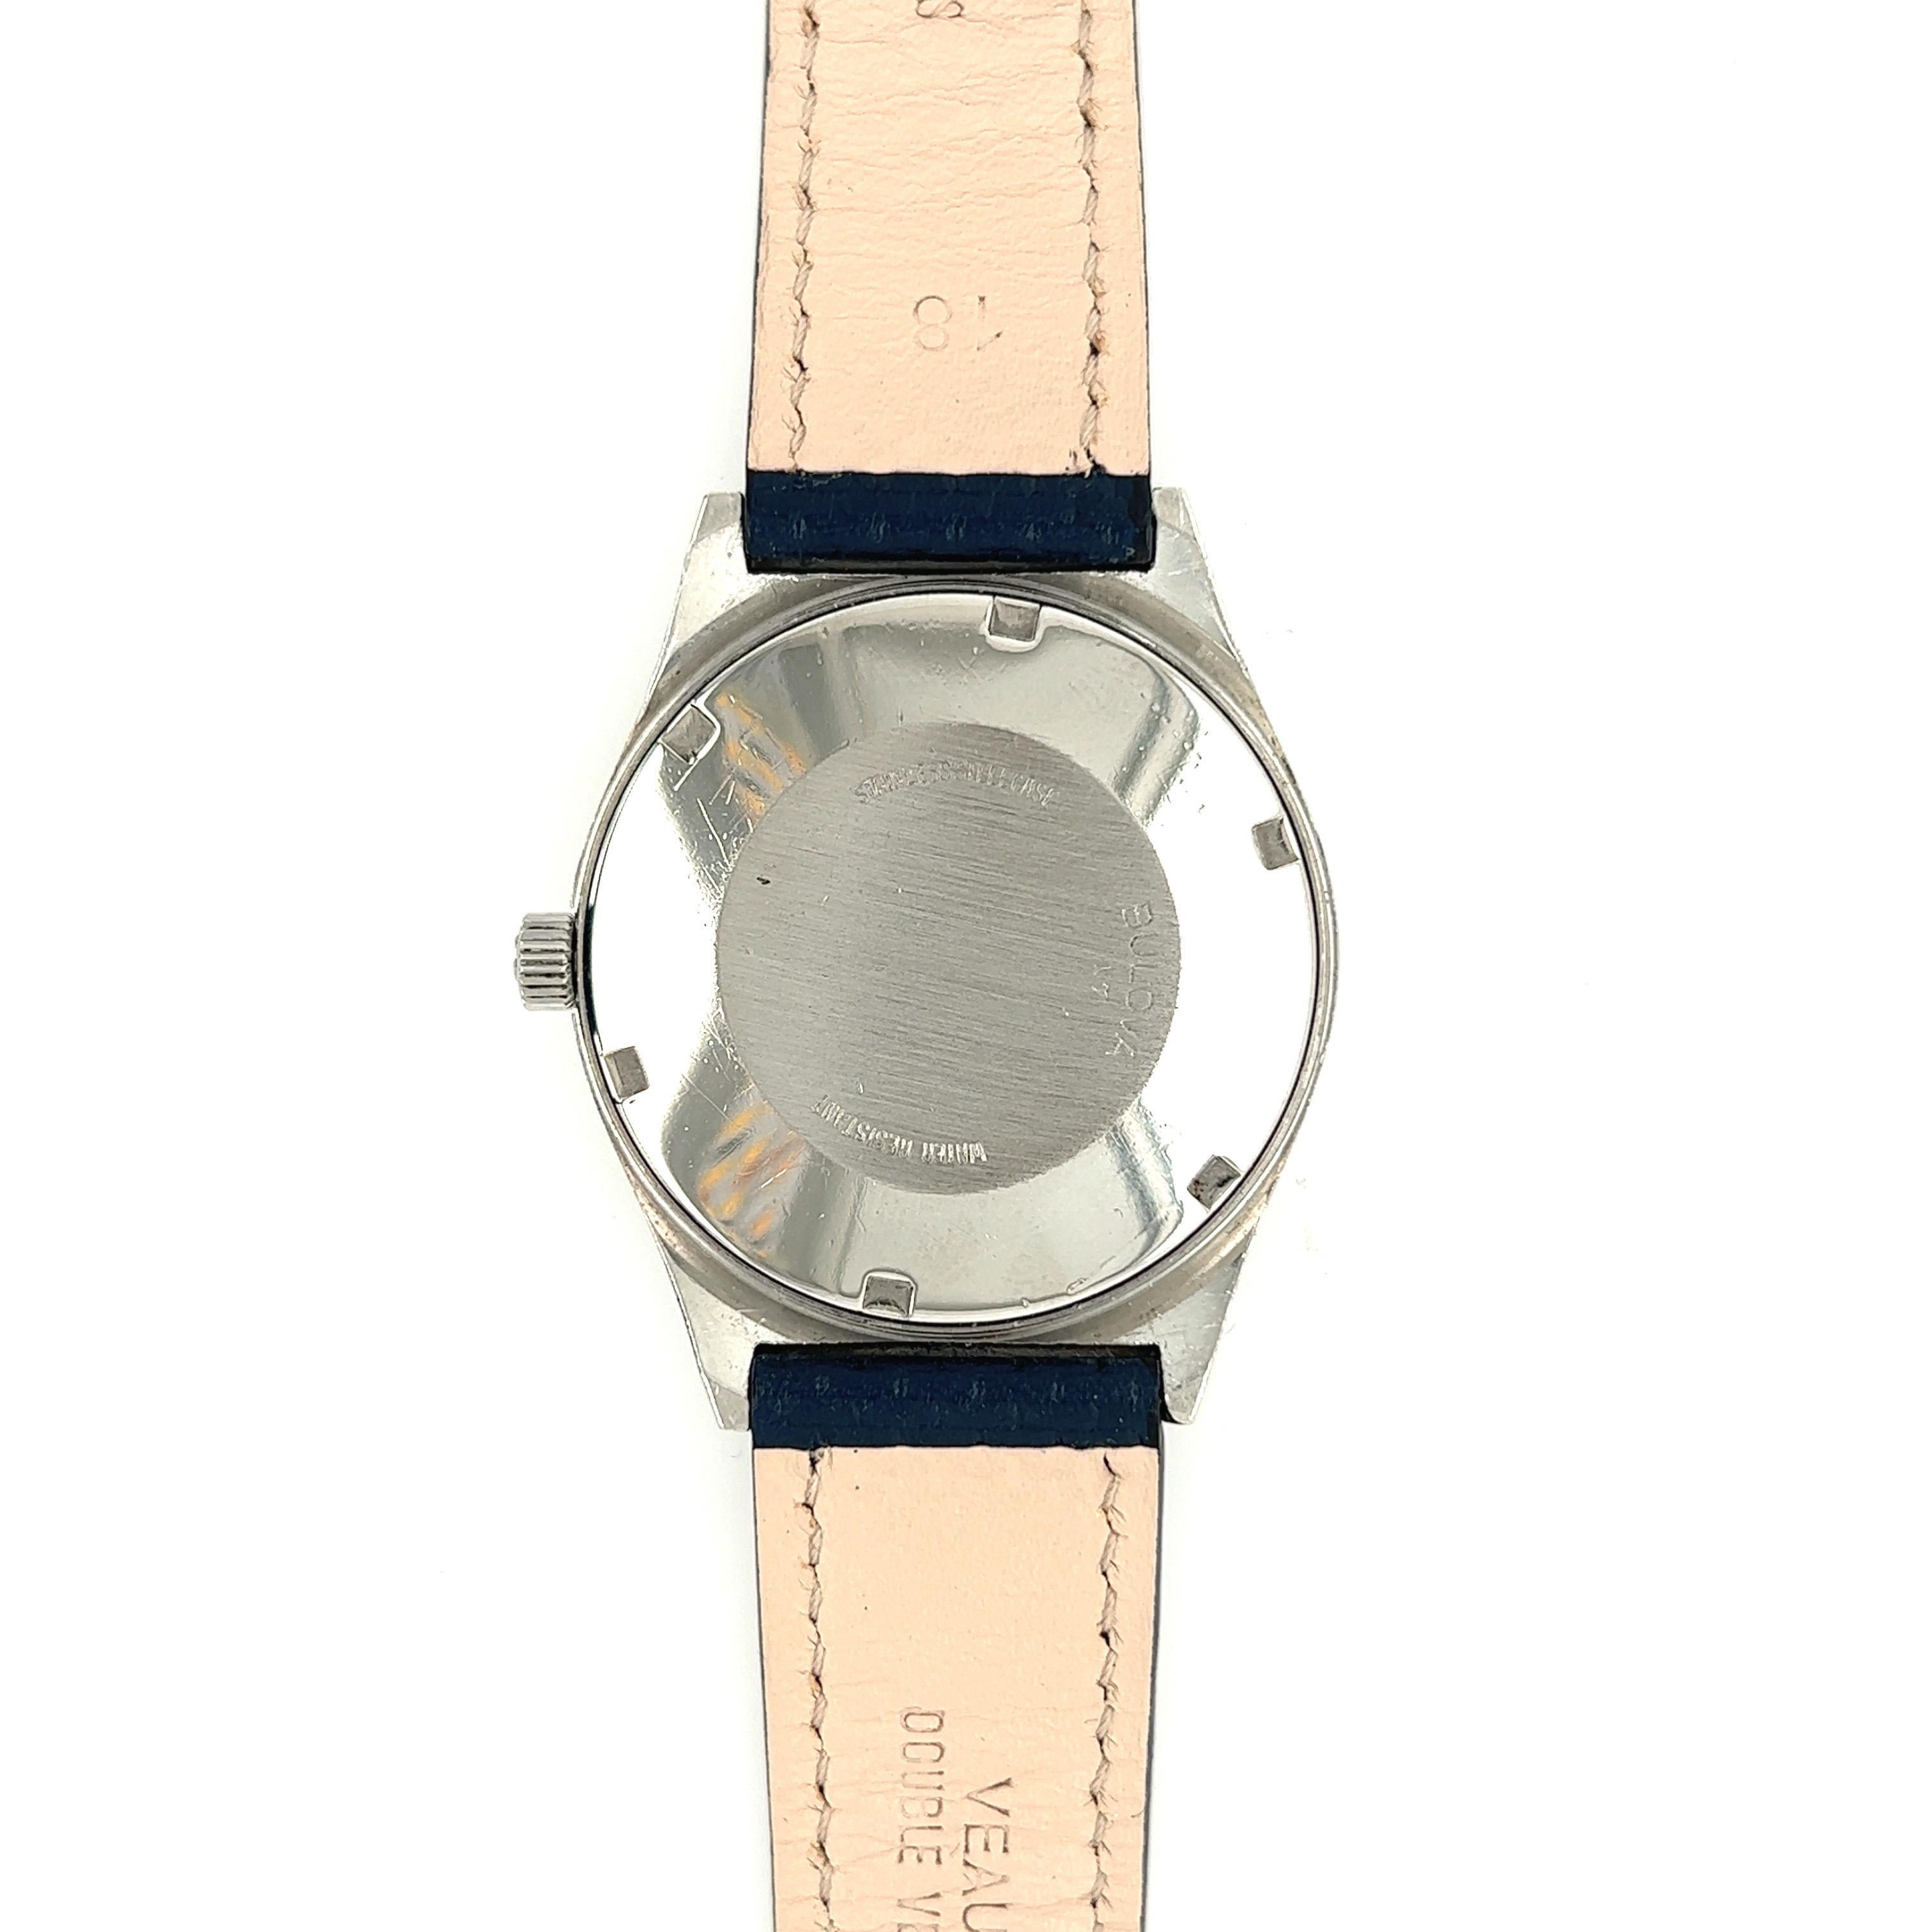 Bulova Uhr, Set-o-Matic, blaues Zifferblatt

Diese Vintage-Armbanduhr mit Automatikaufzug ist ein wahres Juwel der Uhrmacherkunst und zeichnet sich durch ihre revolutionäre 